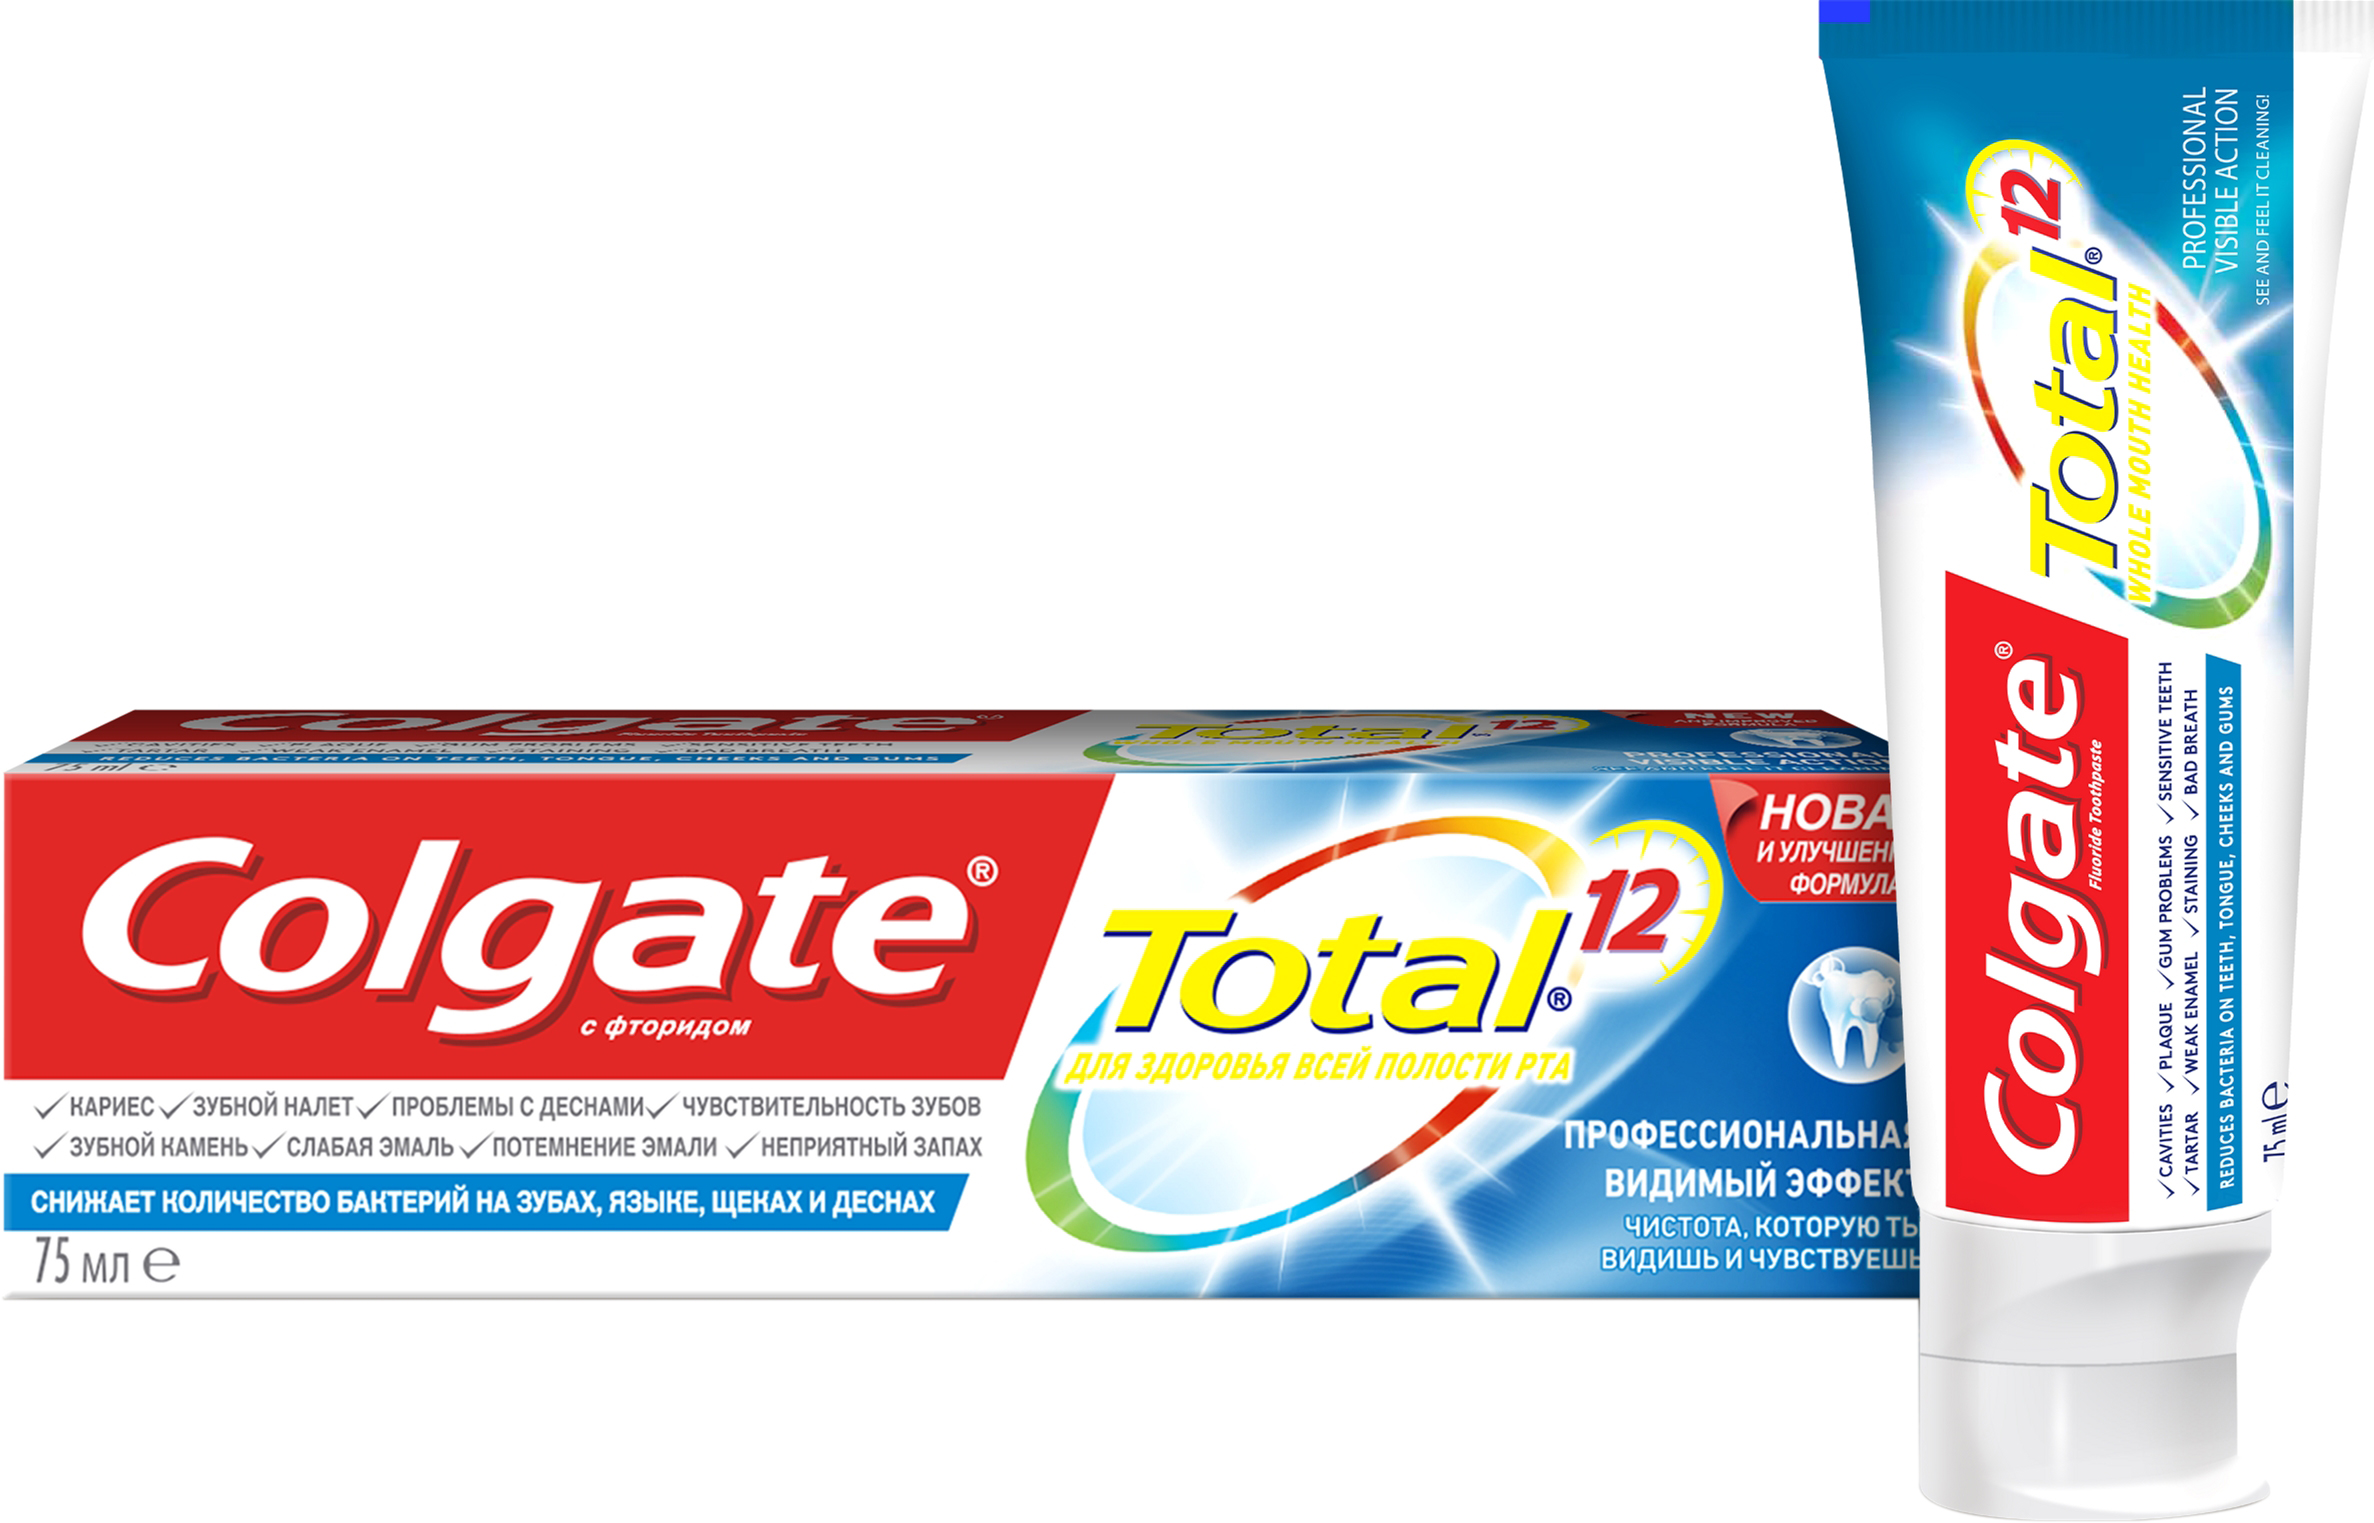 Colgate Total 12 зубная паста Про Видимый Эффект 75мл. - Добрая аптека